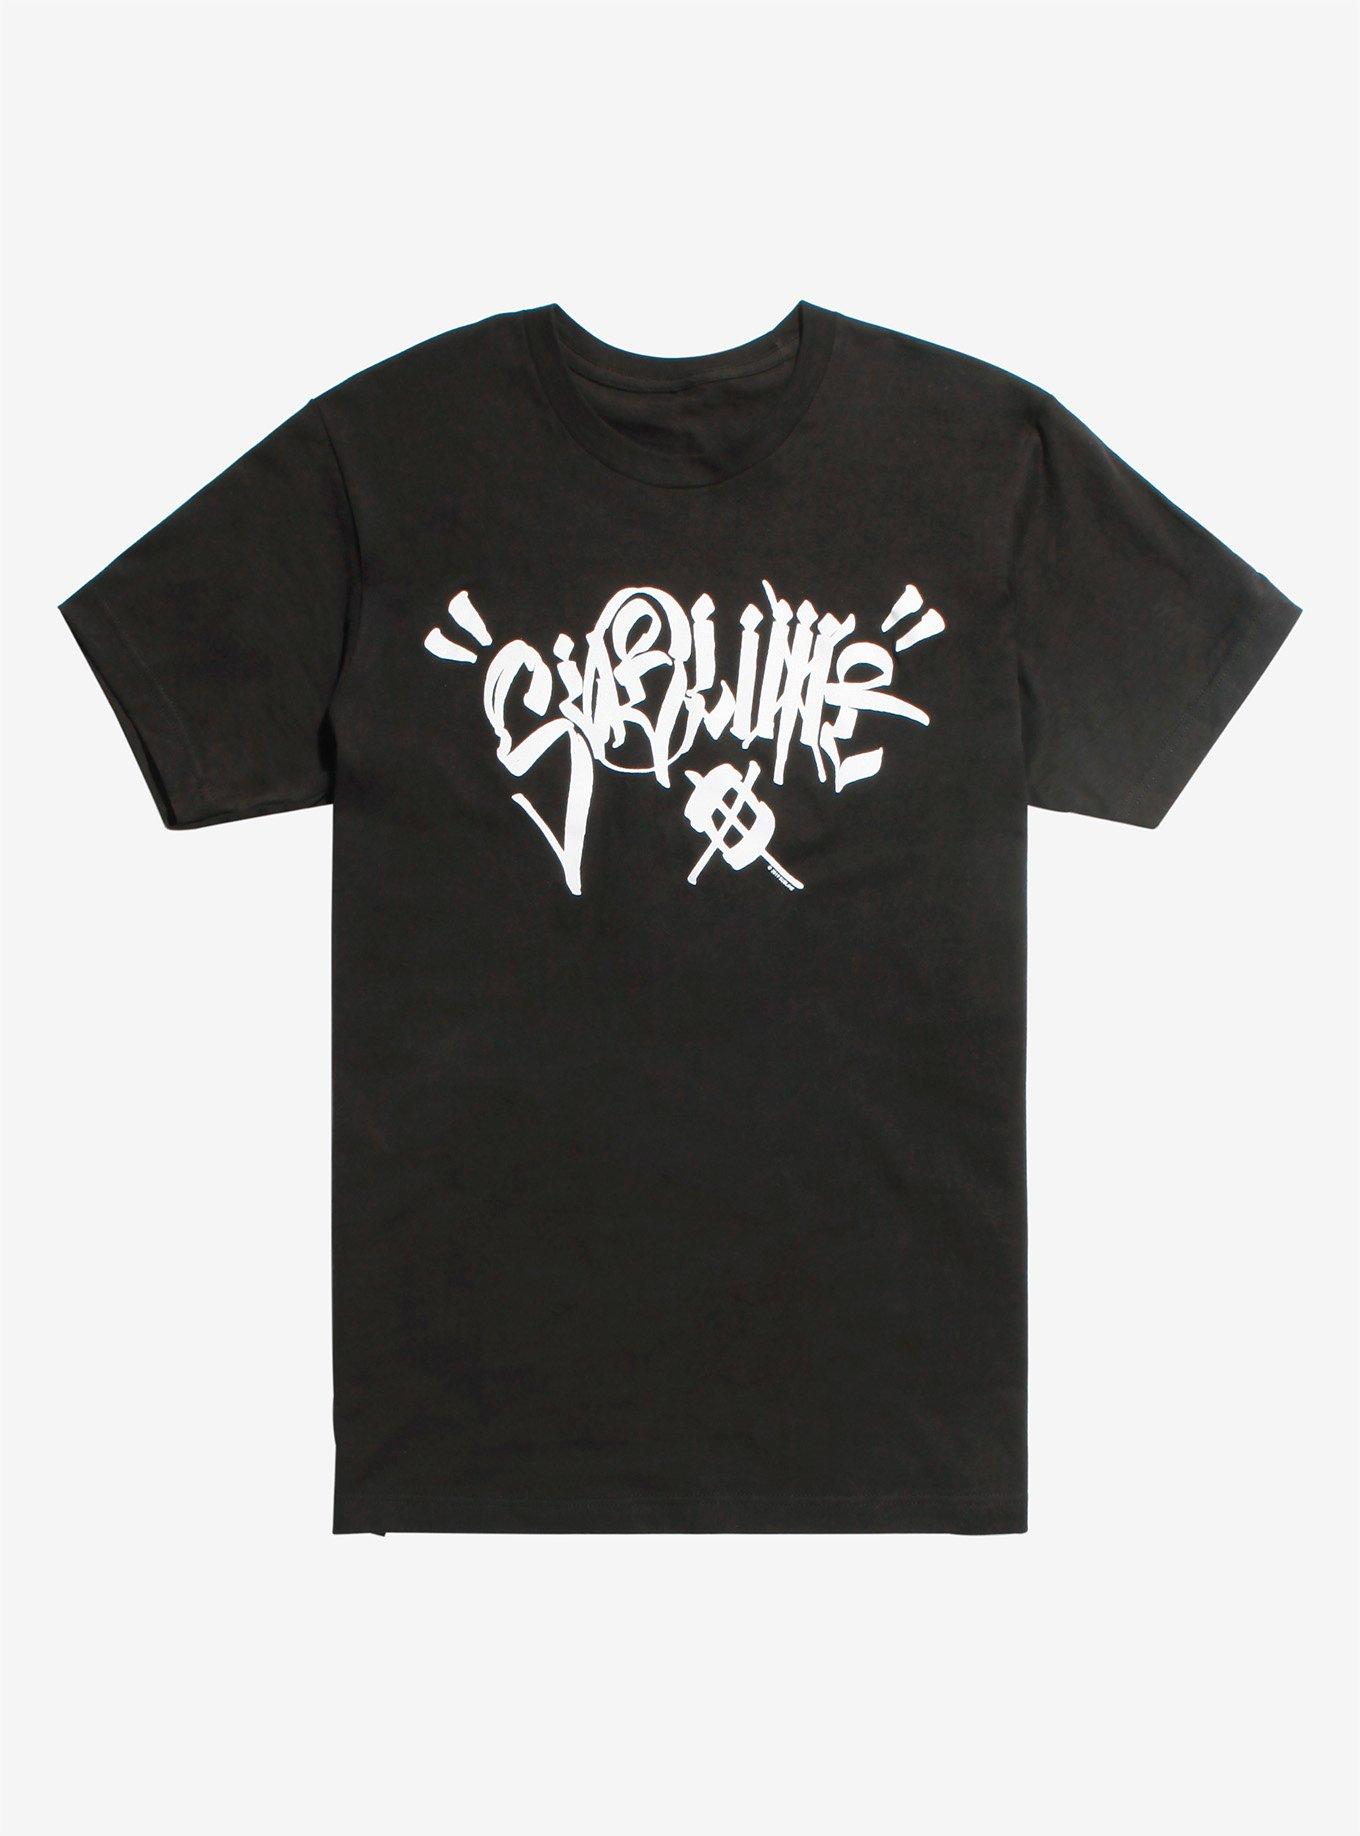 Sublime Graffiti Logo T-Shirt | Hot Topic